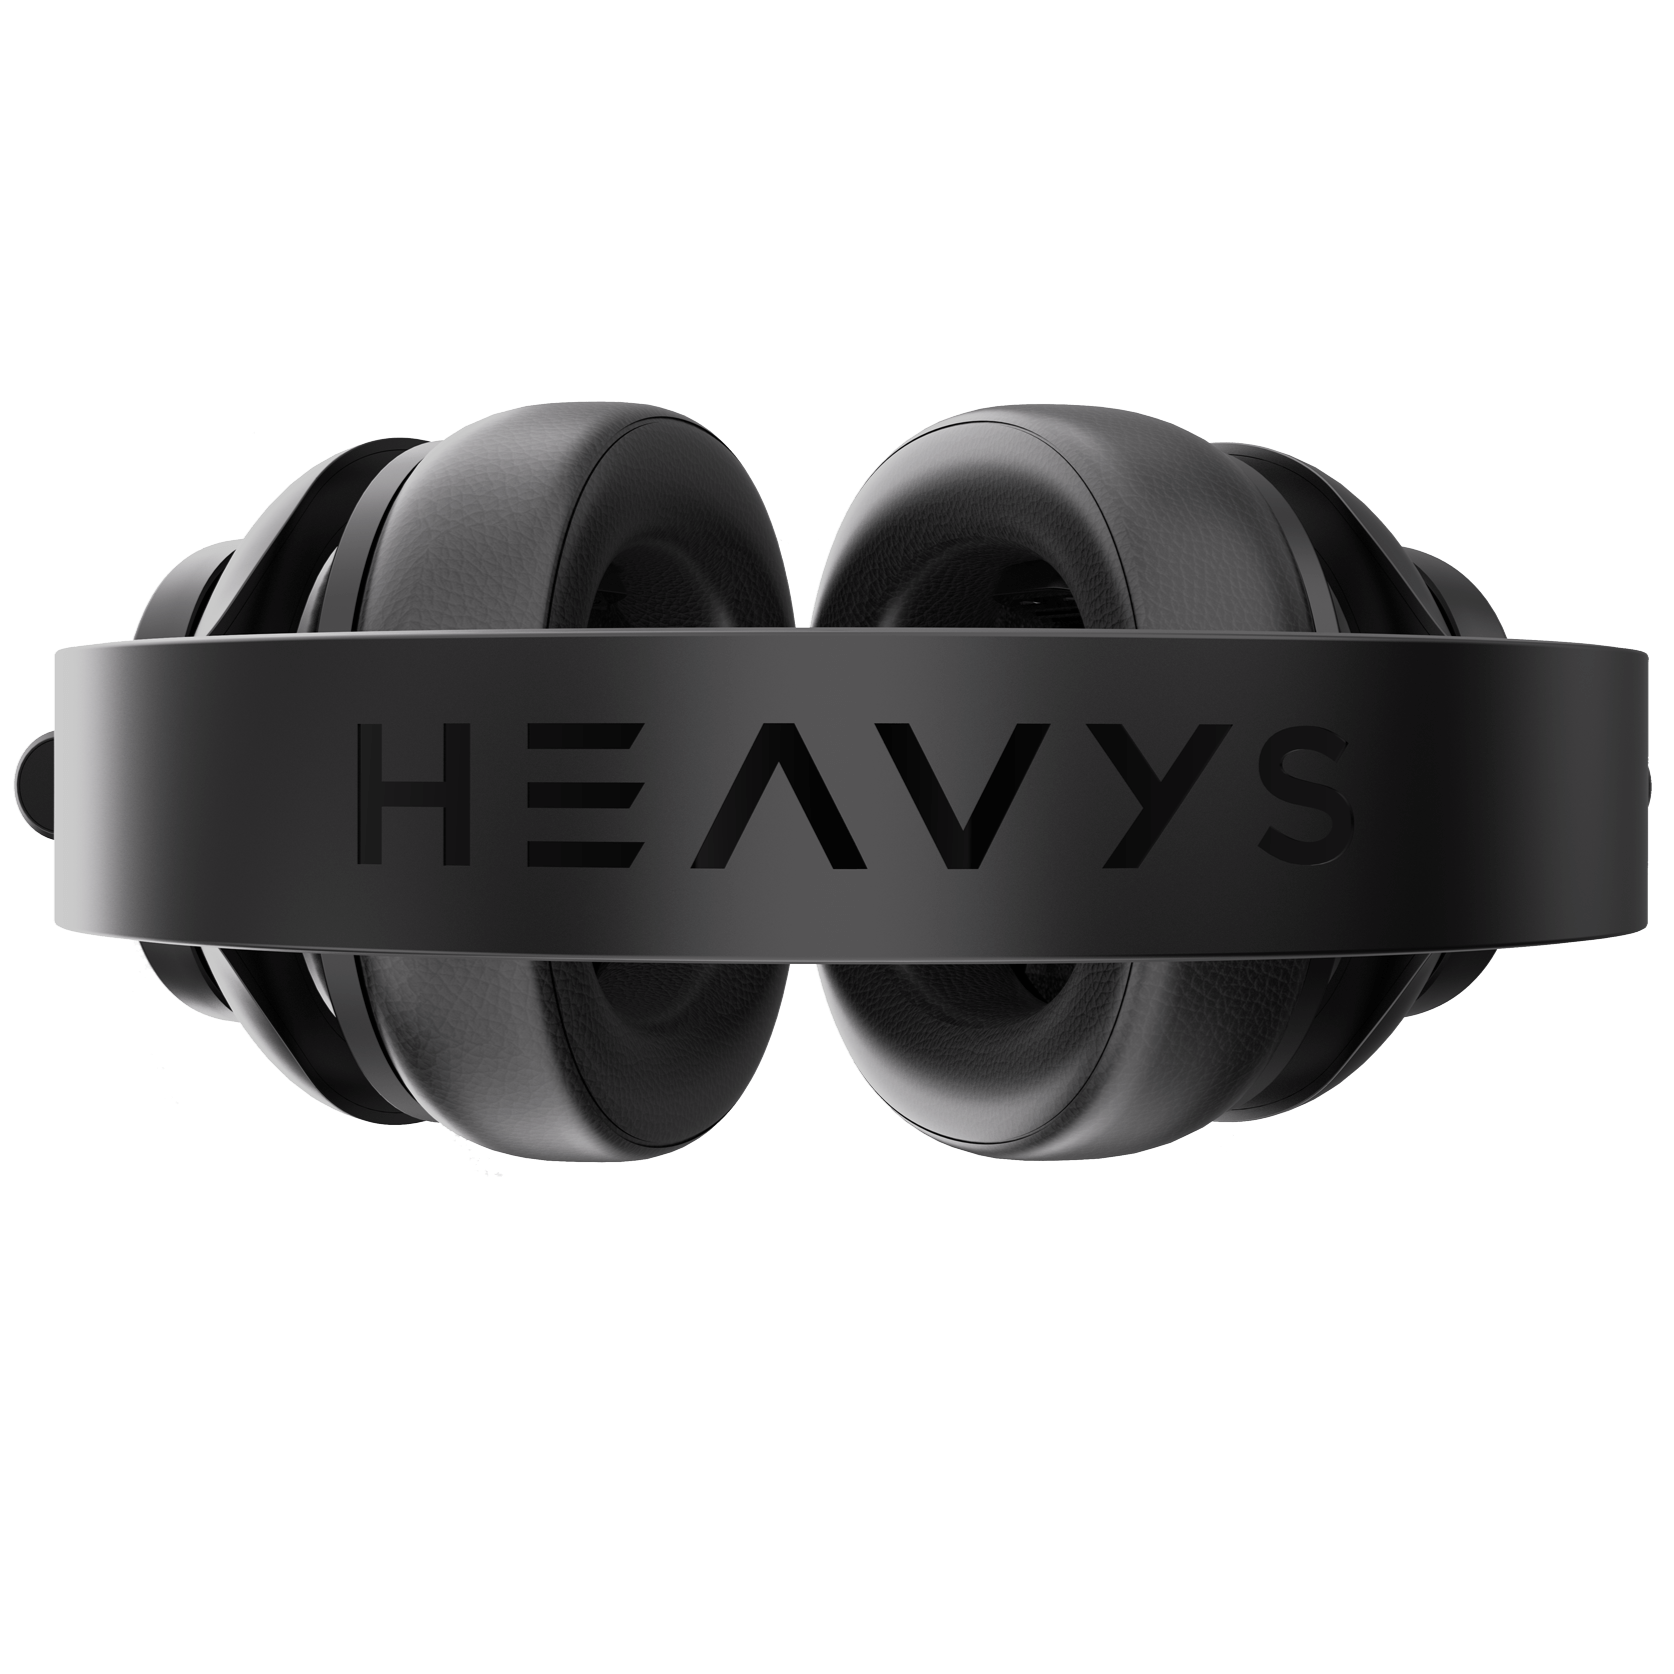 特売情報Heavys Headphones ヘヴィメタル専用ヘッドホン クラファン ヘッドホン